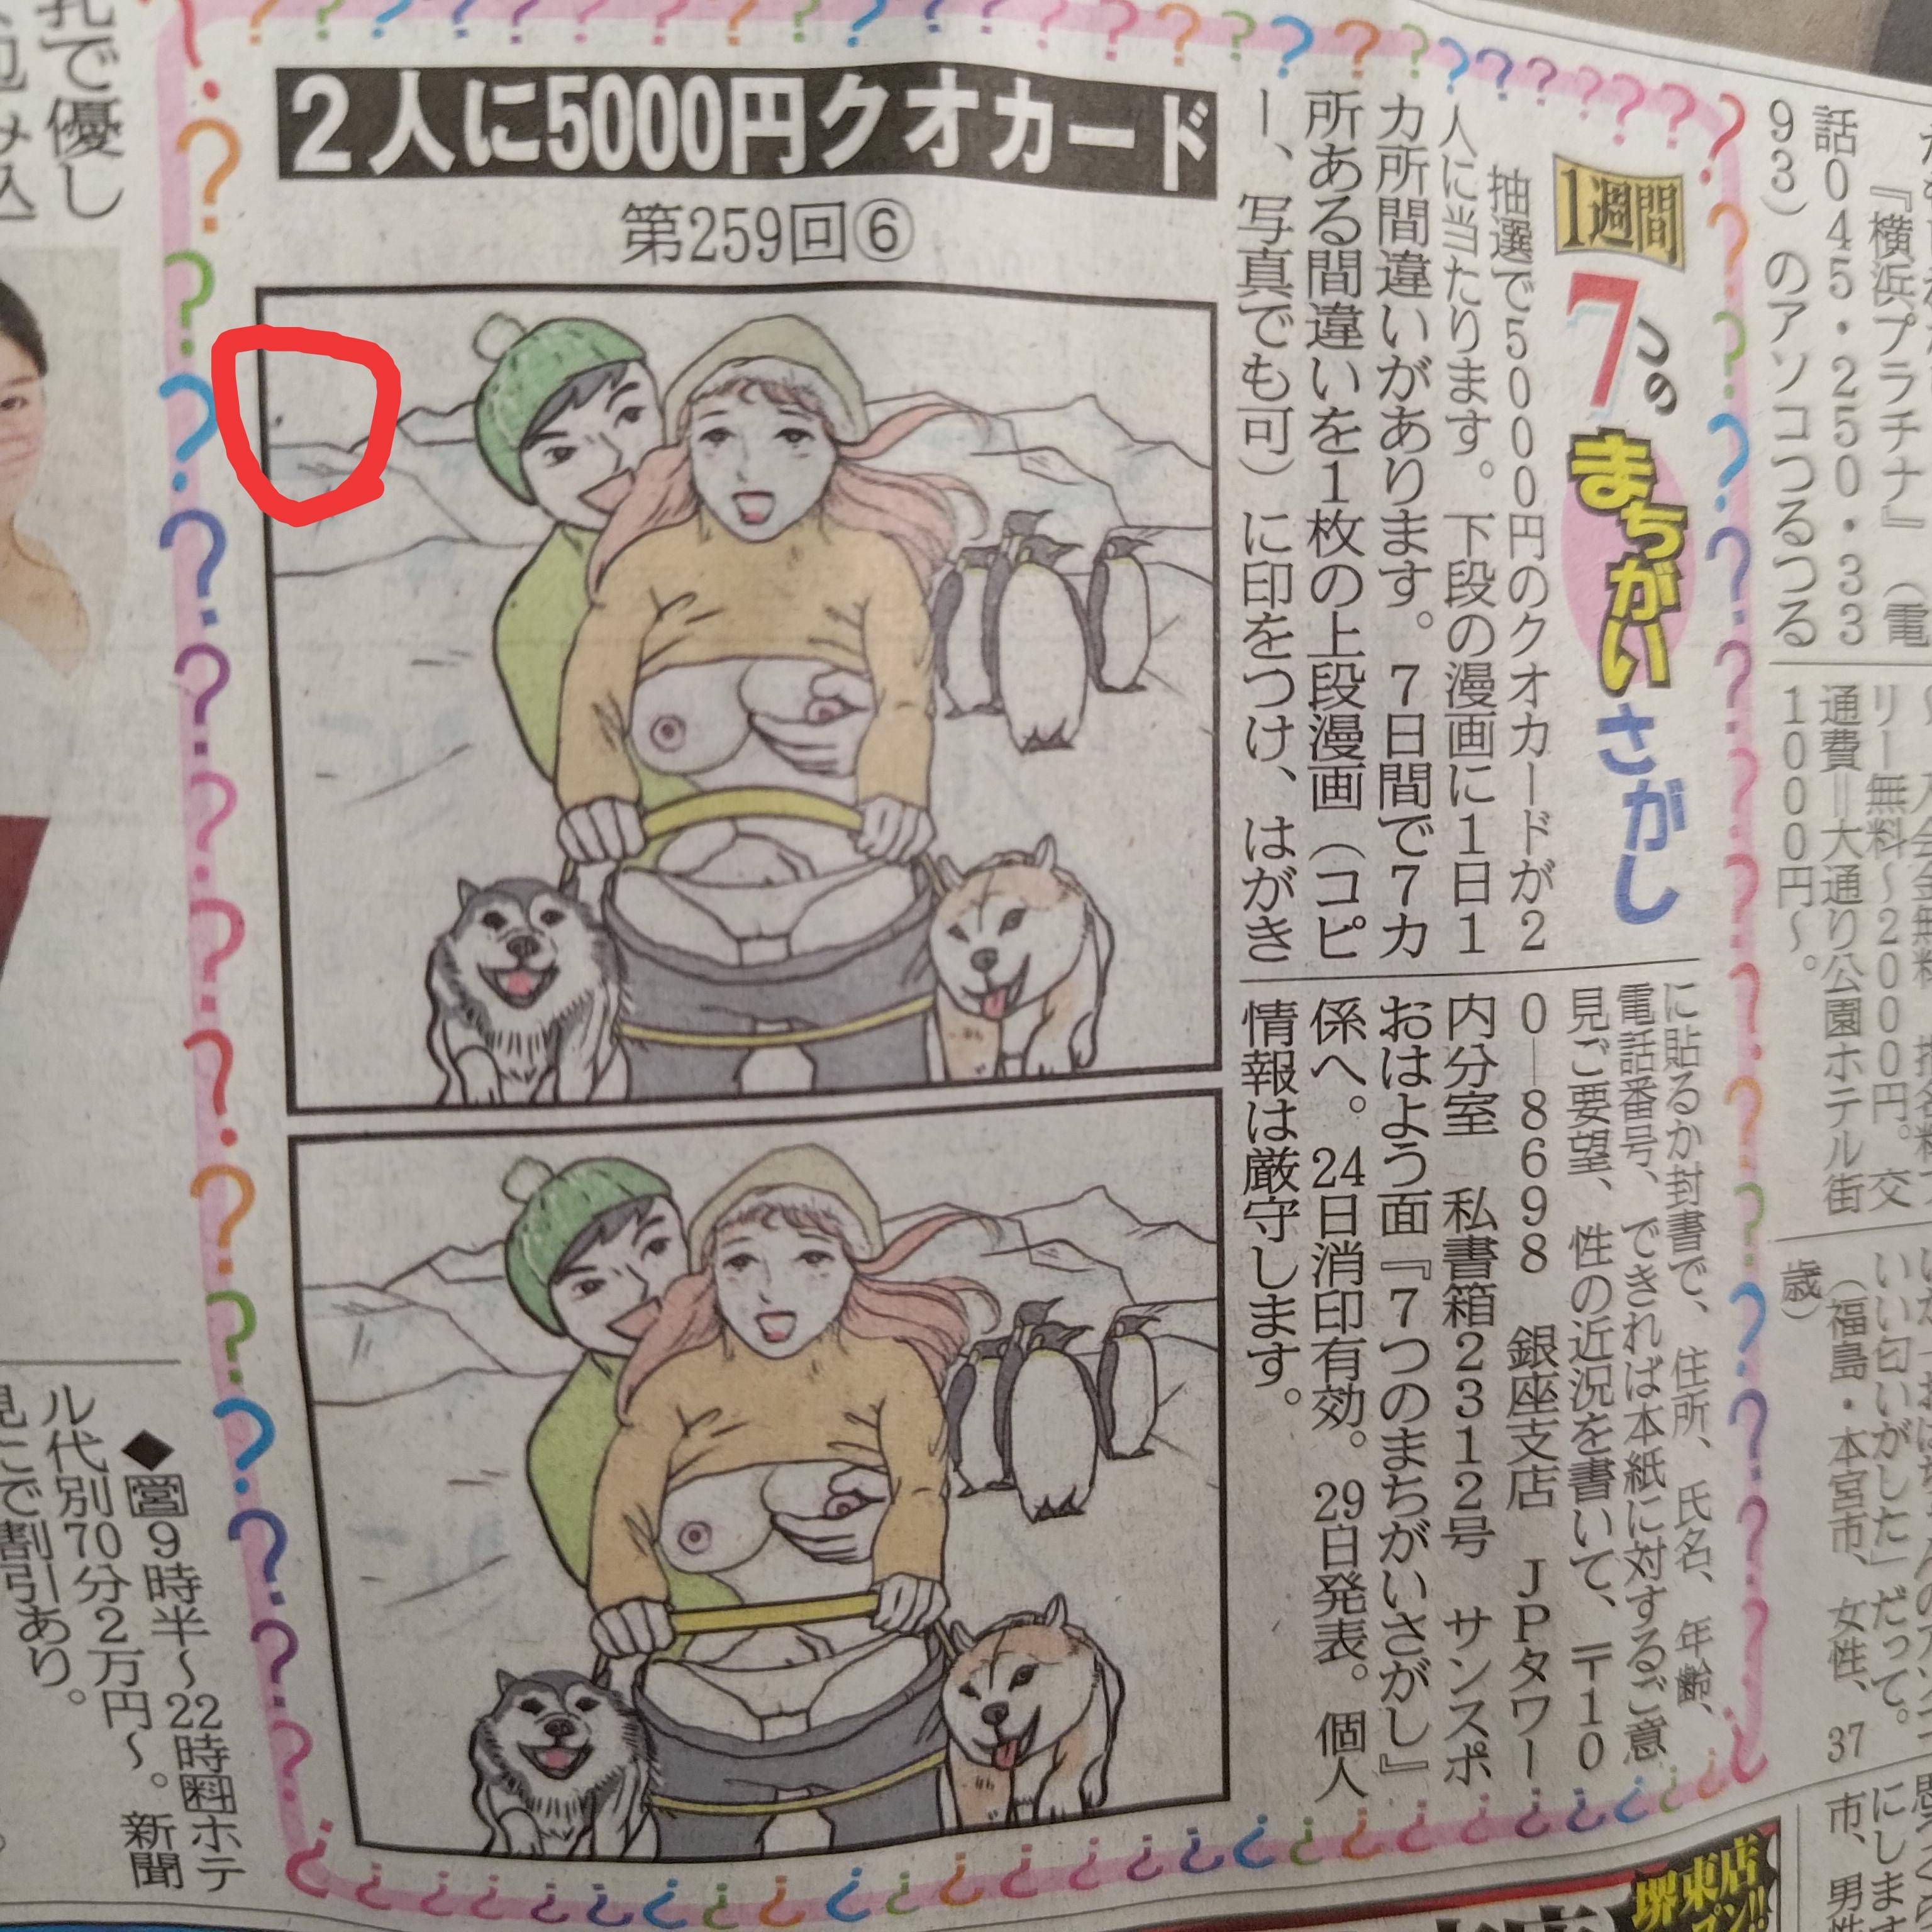 【Image】Sankei Sports' mistake finding is too erotic wwwwwwwwwwww 2